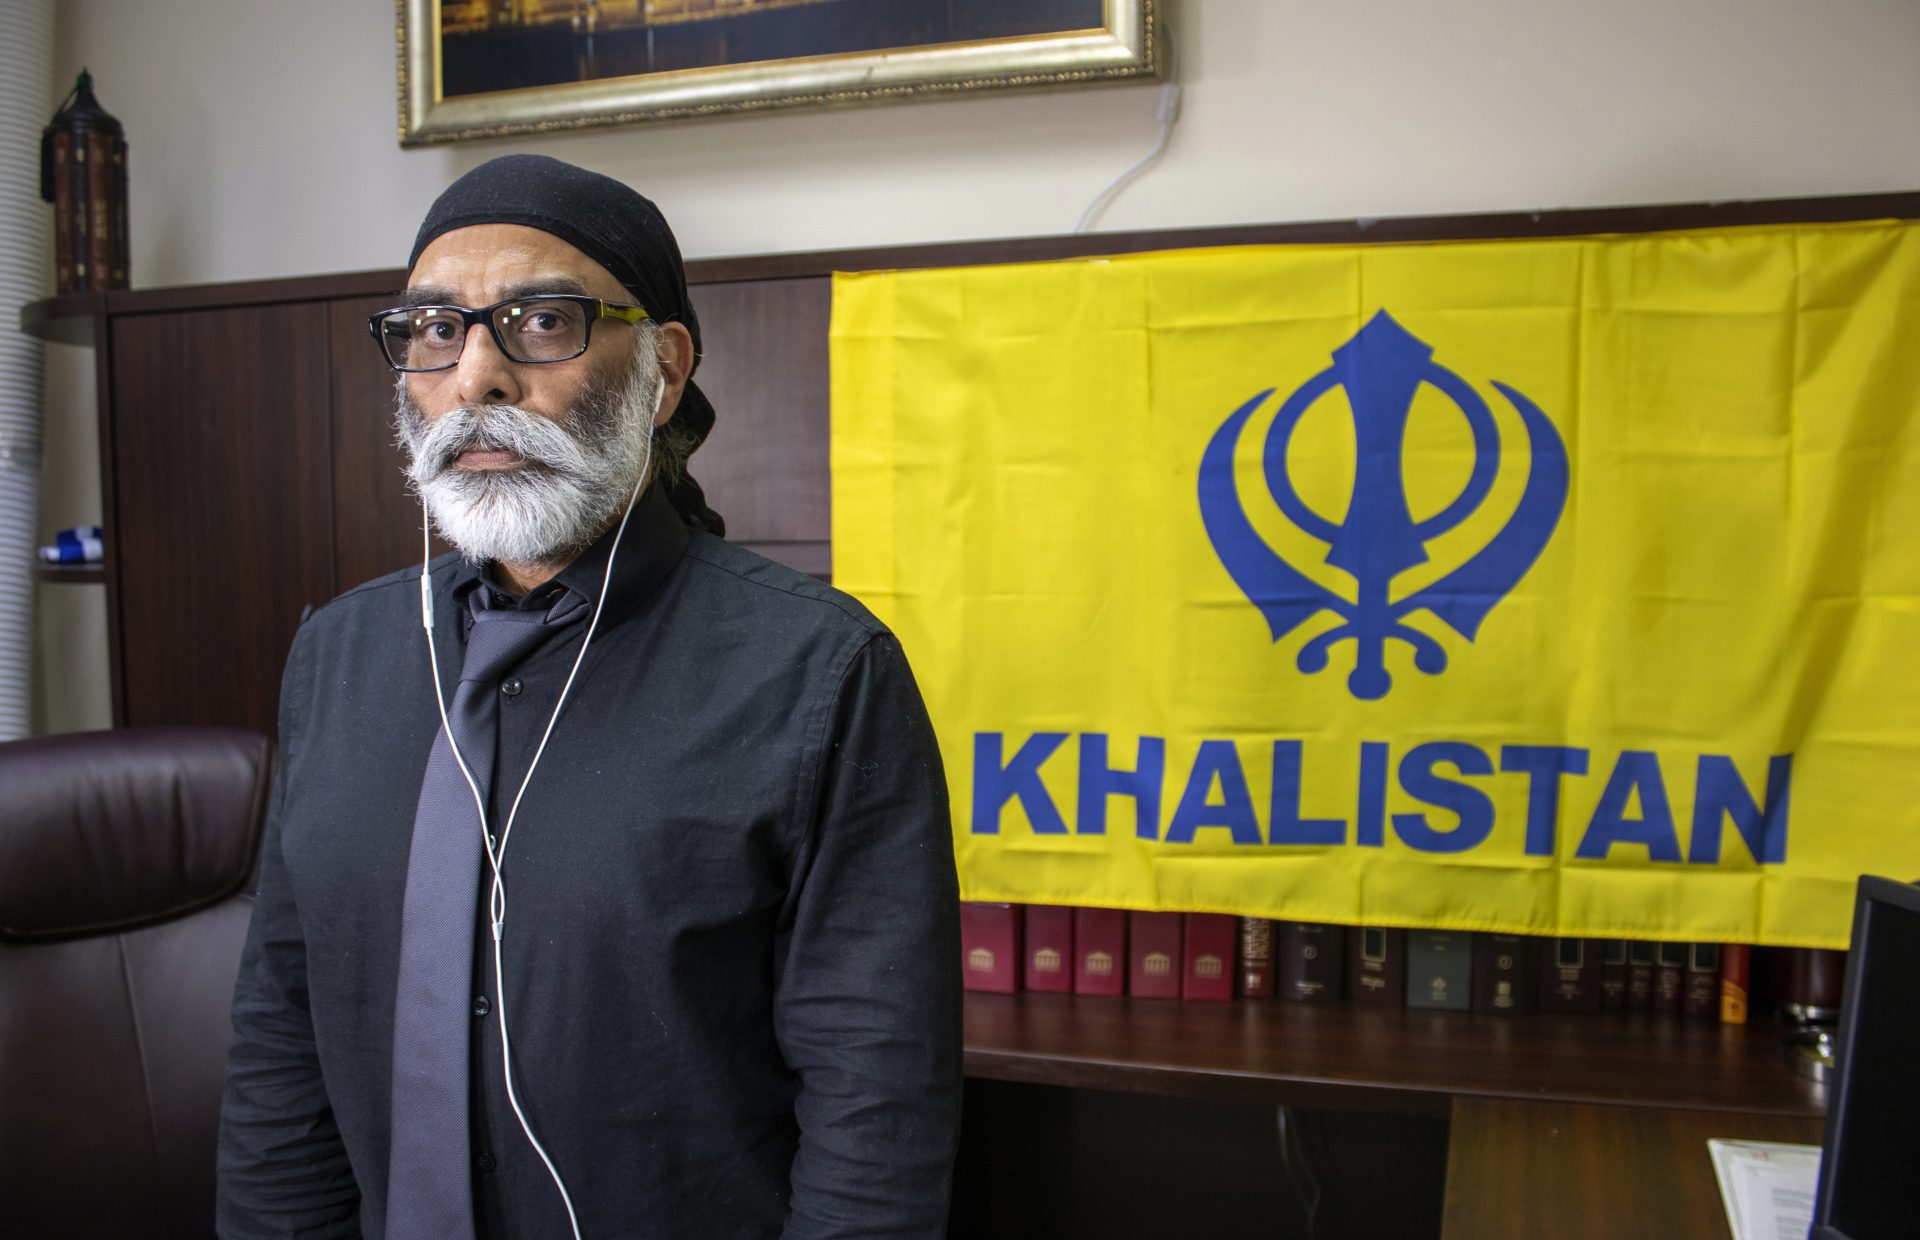 République tchèque extrade suspect indien à USA pour complot Sikh